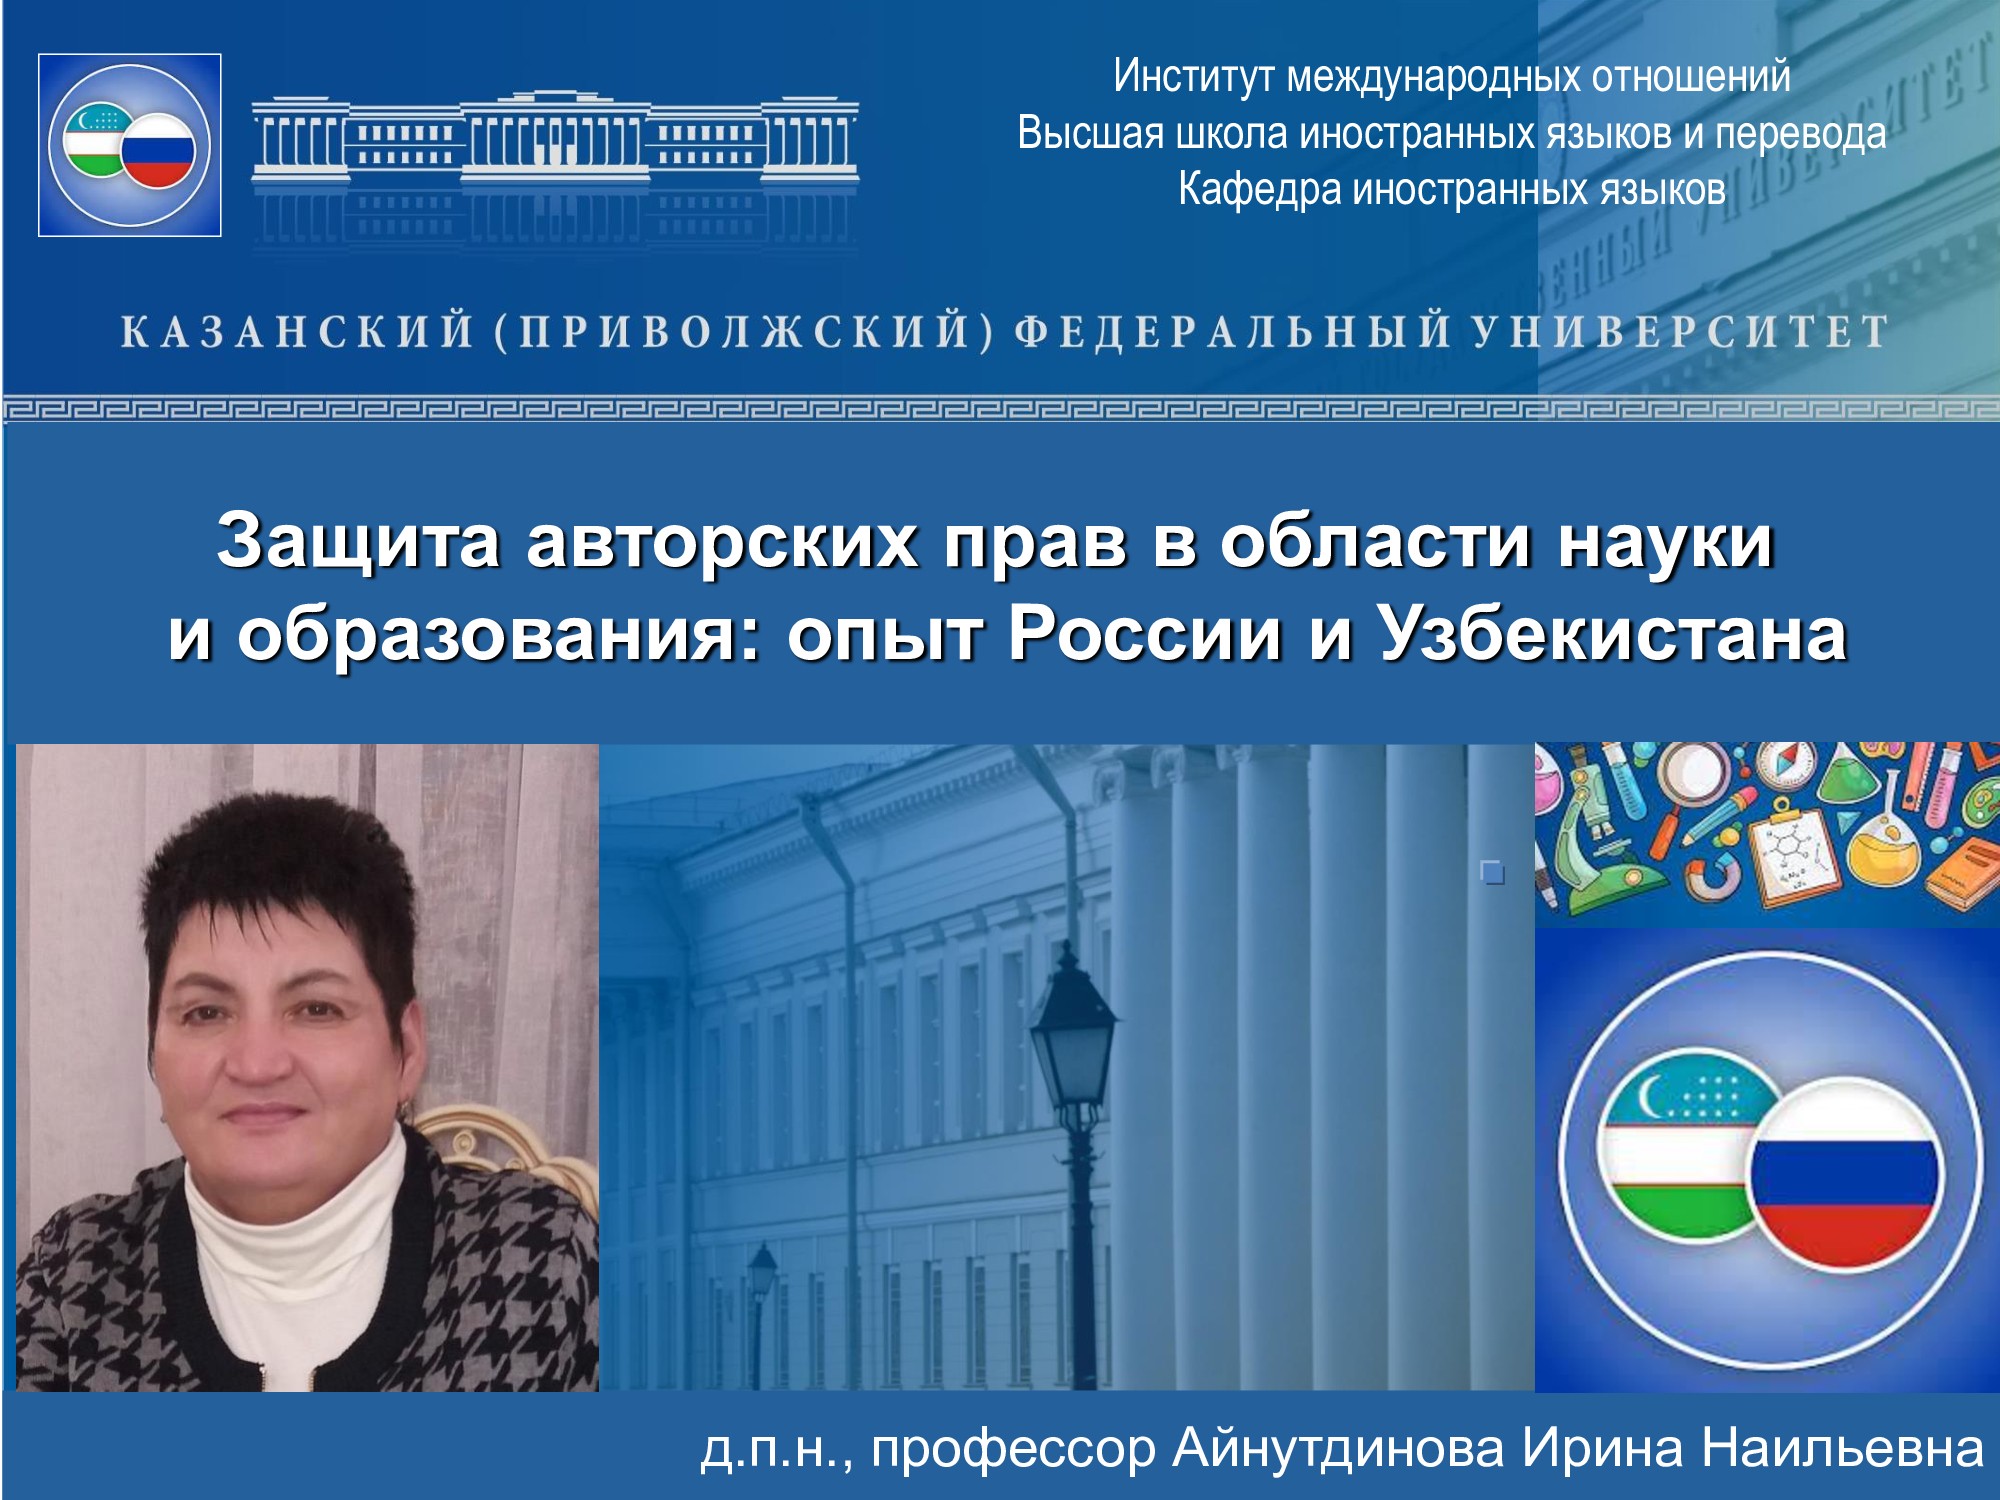 Наука и образование ? как приоритет сотрудничества России и Узбекистана